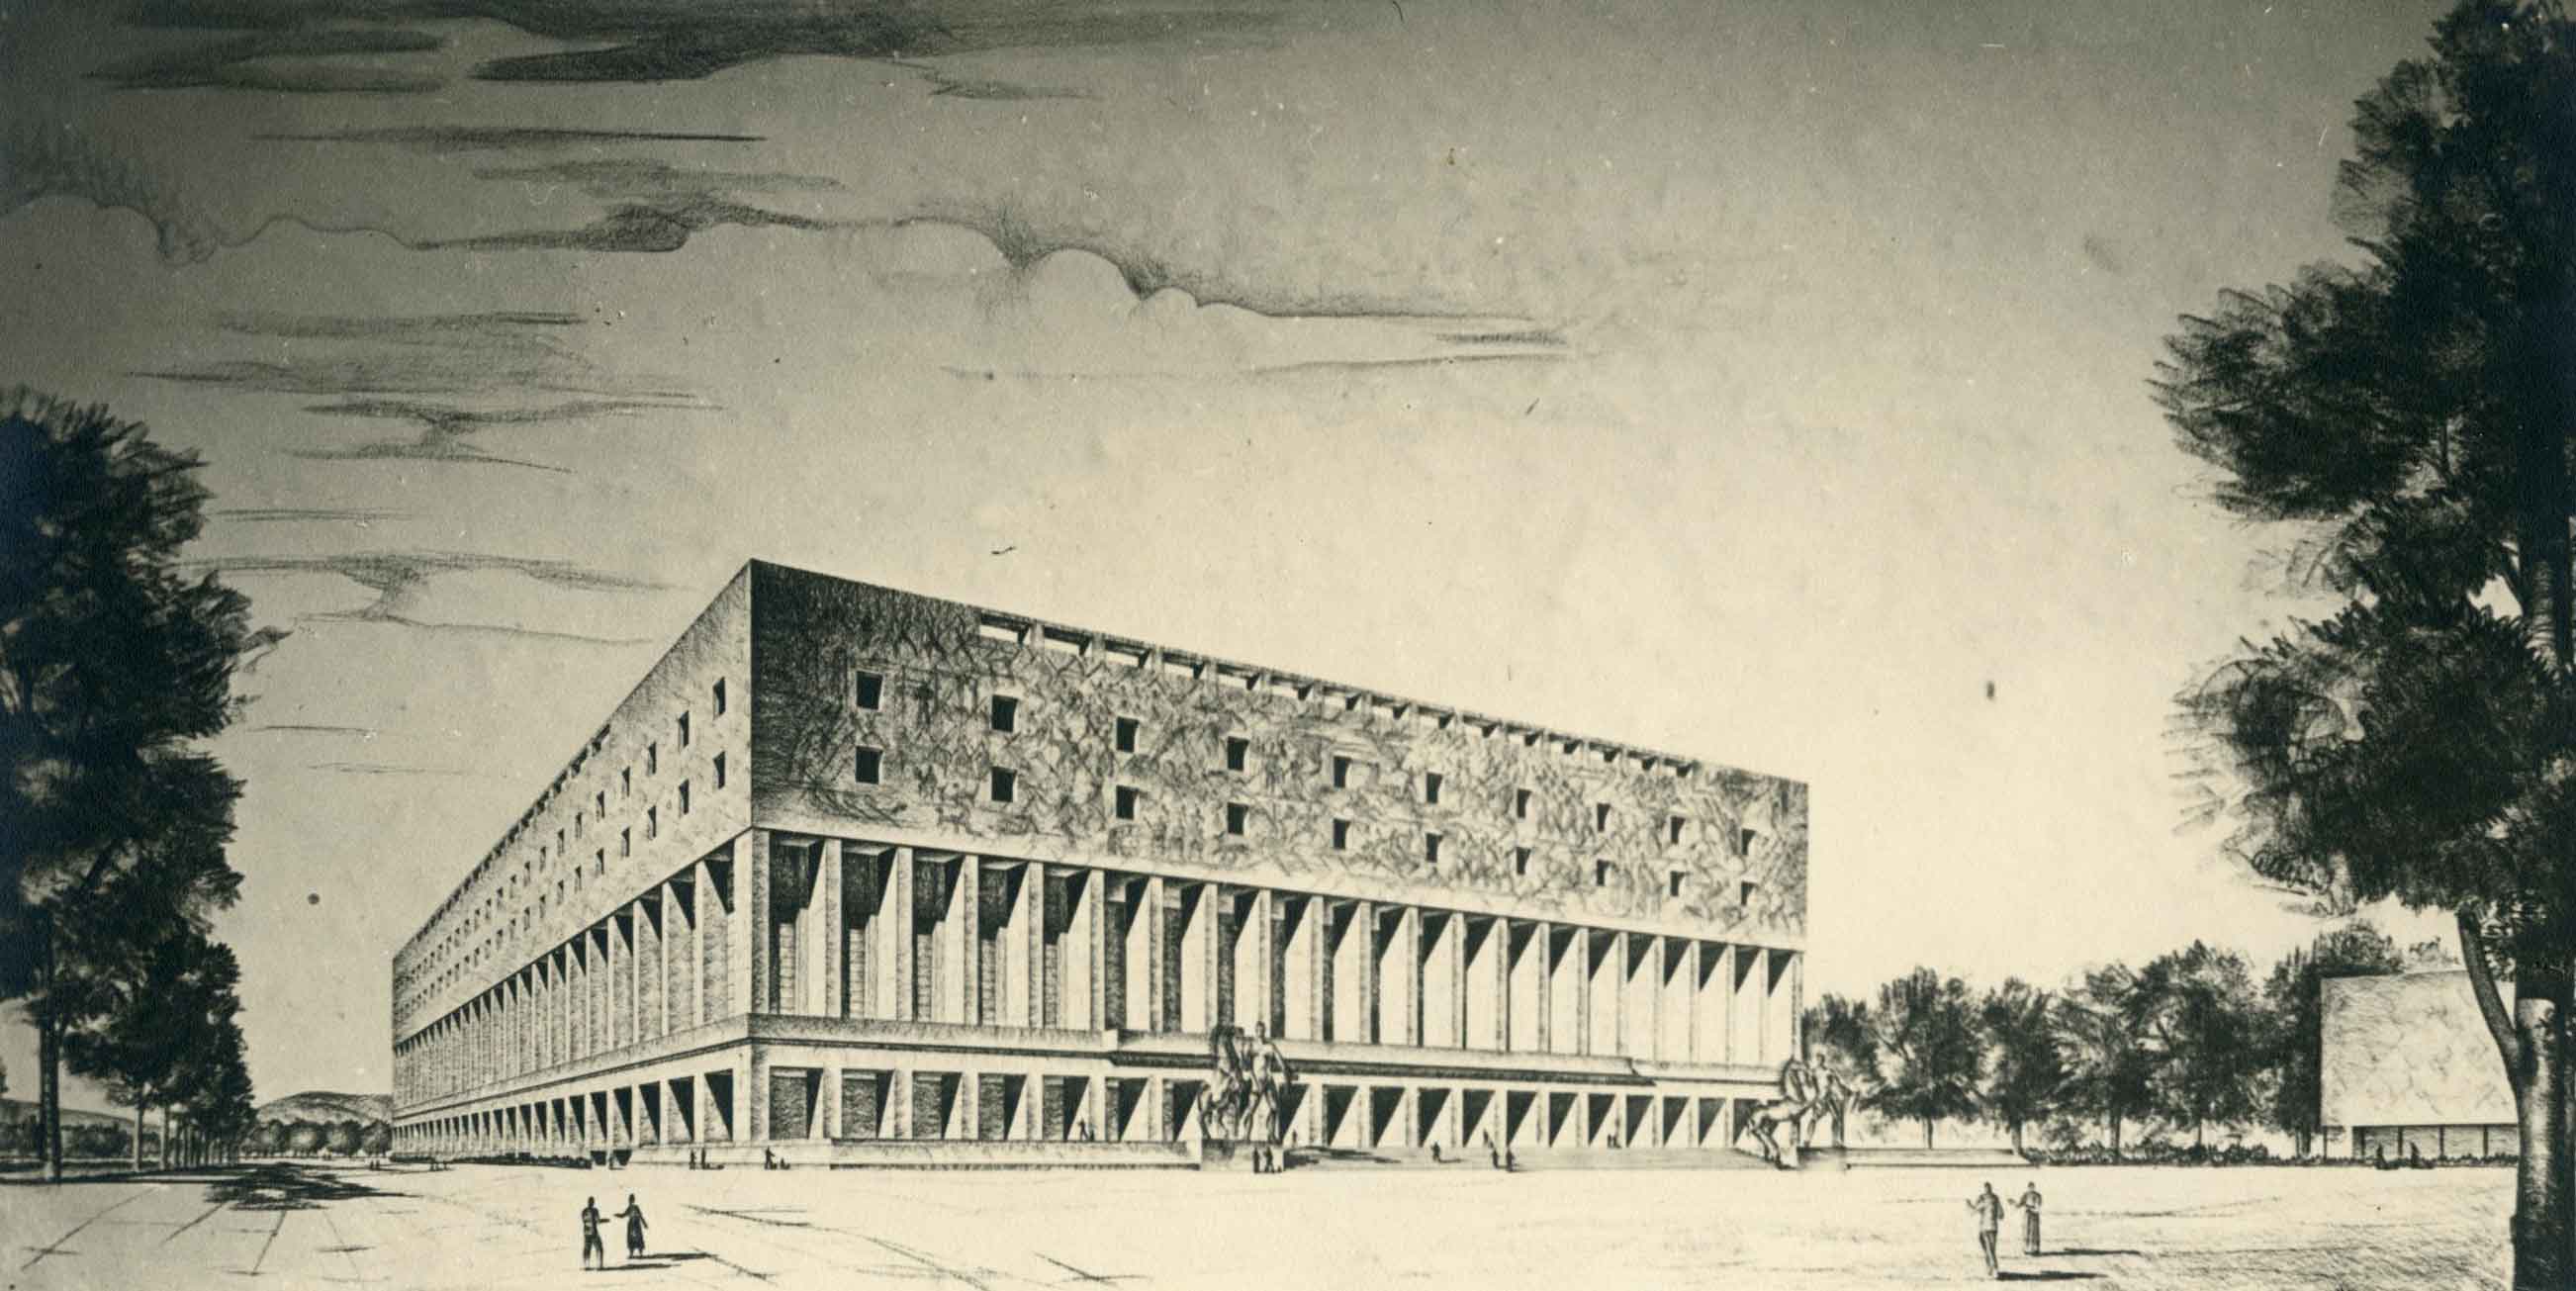 Progetto di concorso per il Palazzo dei congressi e ricevimenti all'E42, Roma